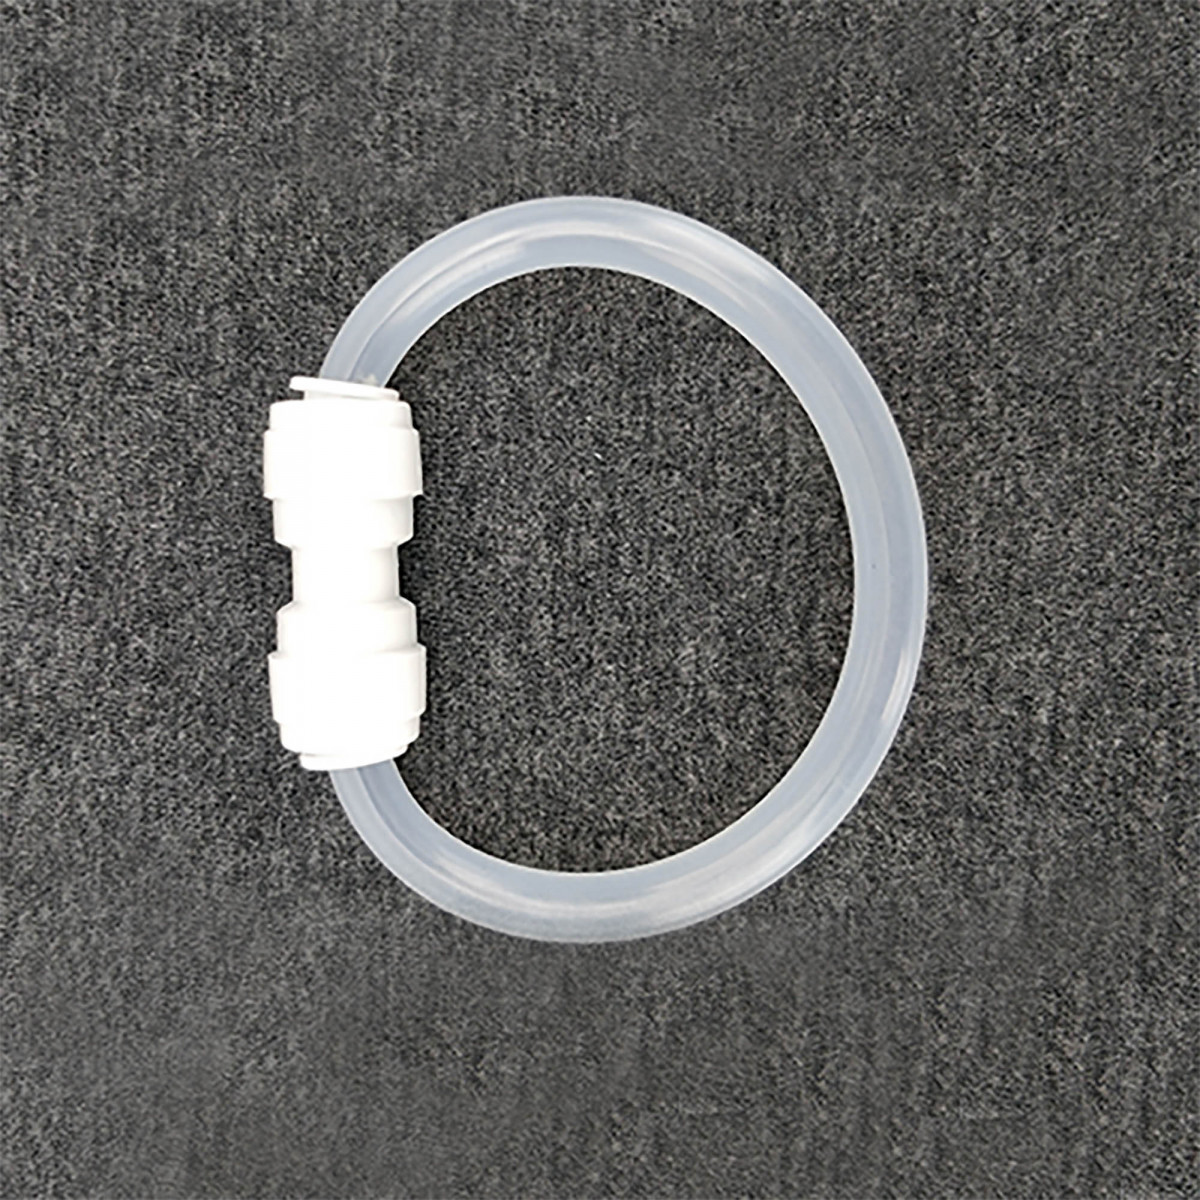 Duotight Steckanschluss 8 mm (5/16”) Anschlussstück